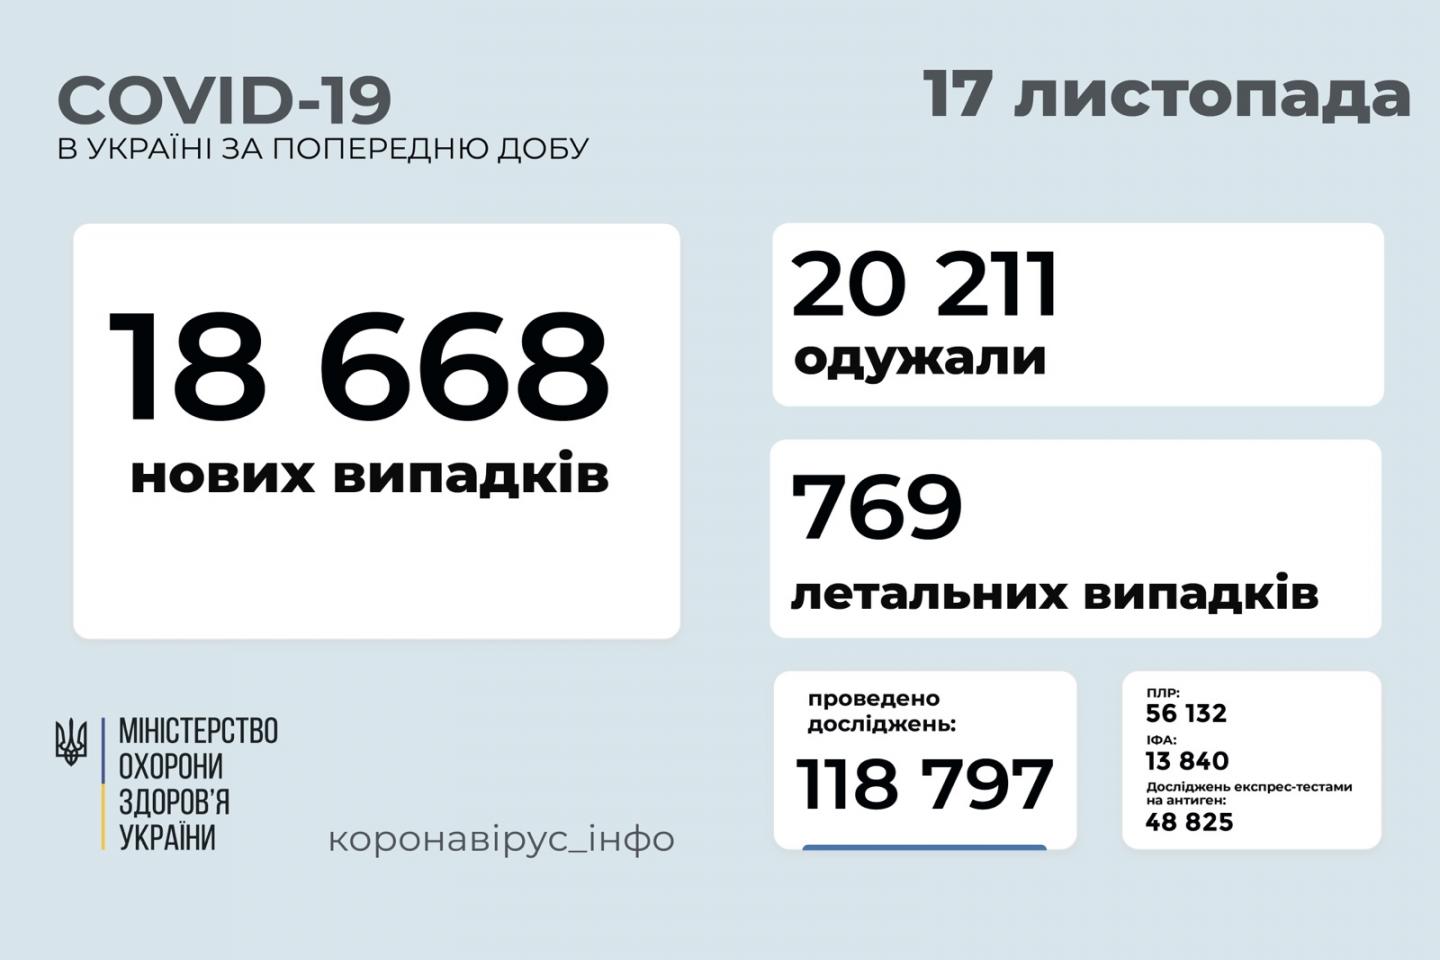 http://dunrada.gov.ua/uploadfile/archive_news/2021/11/17/2021-11-17_2973/images/images-9847.jpg